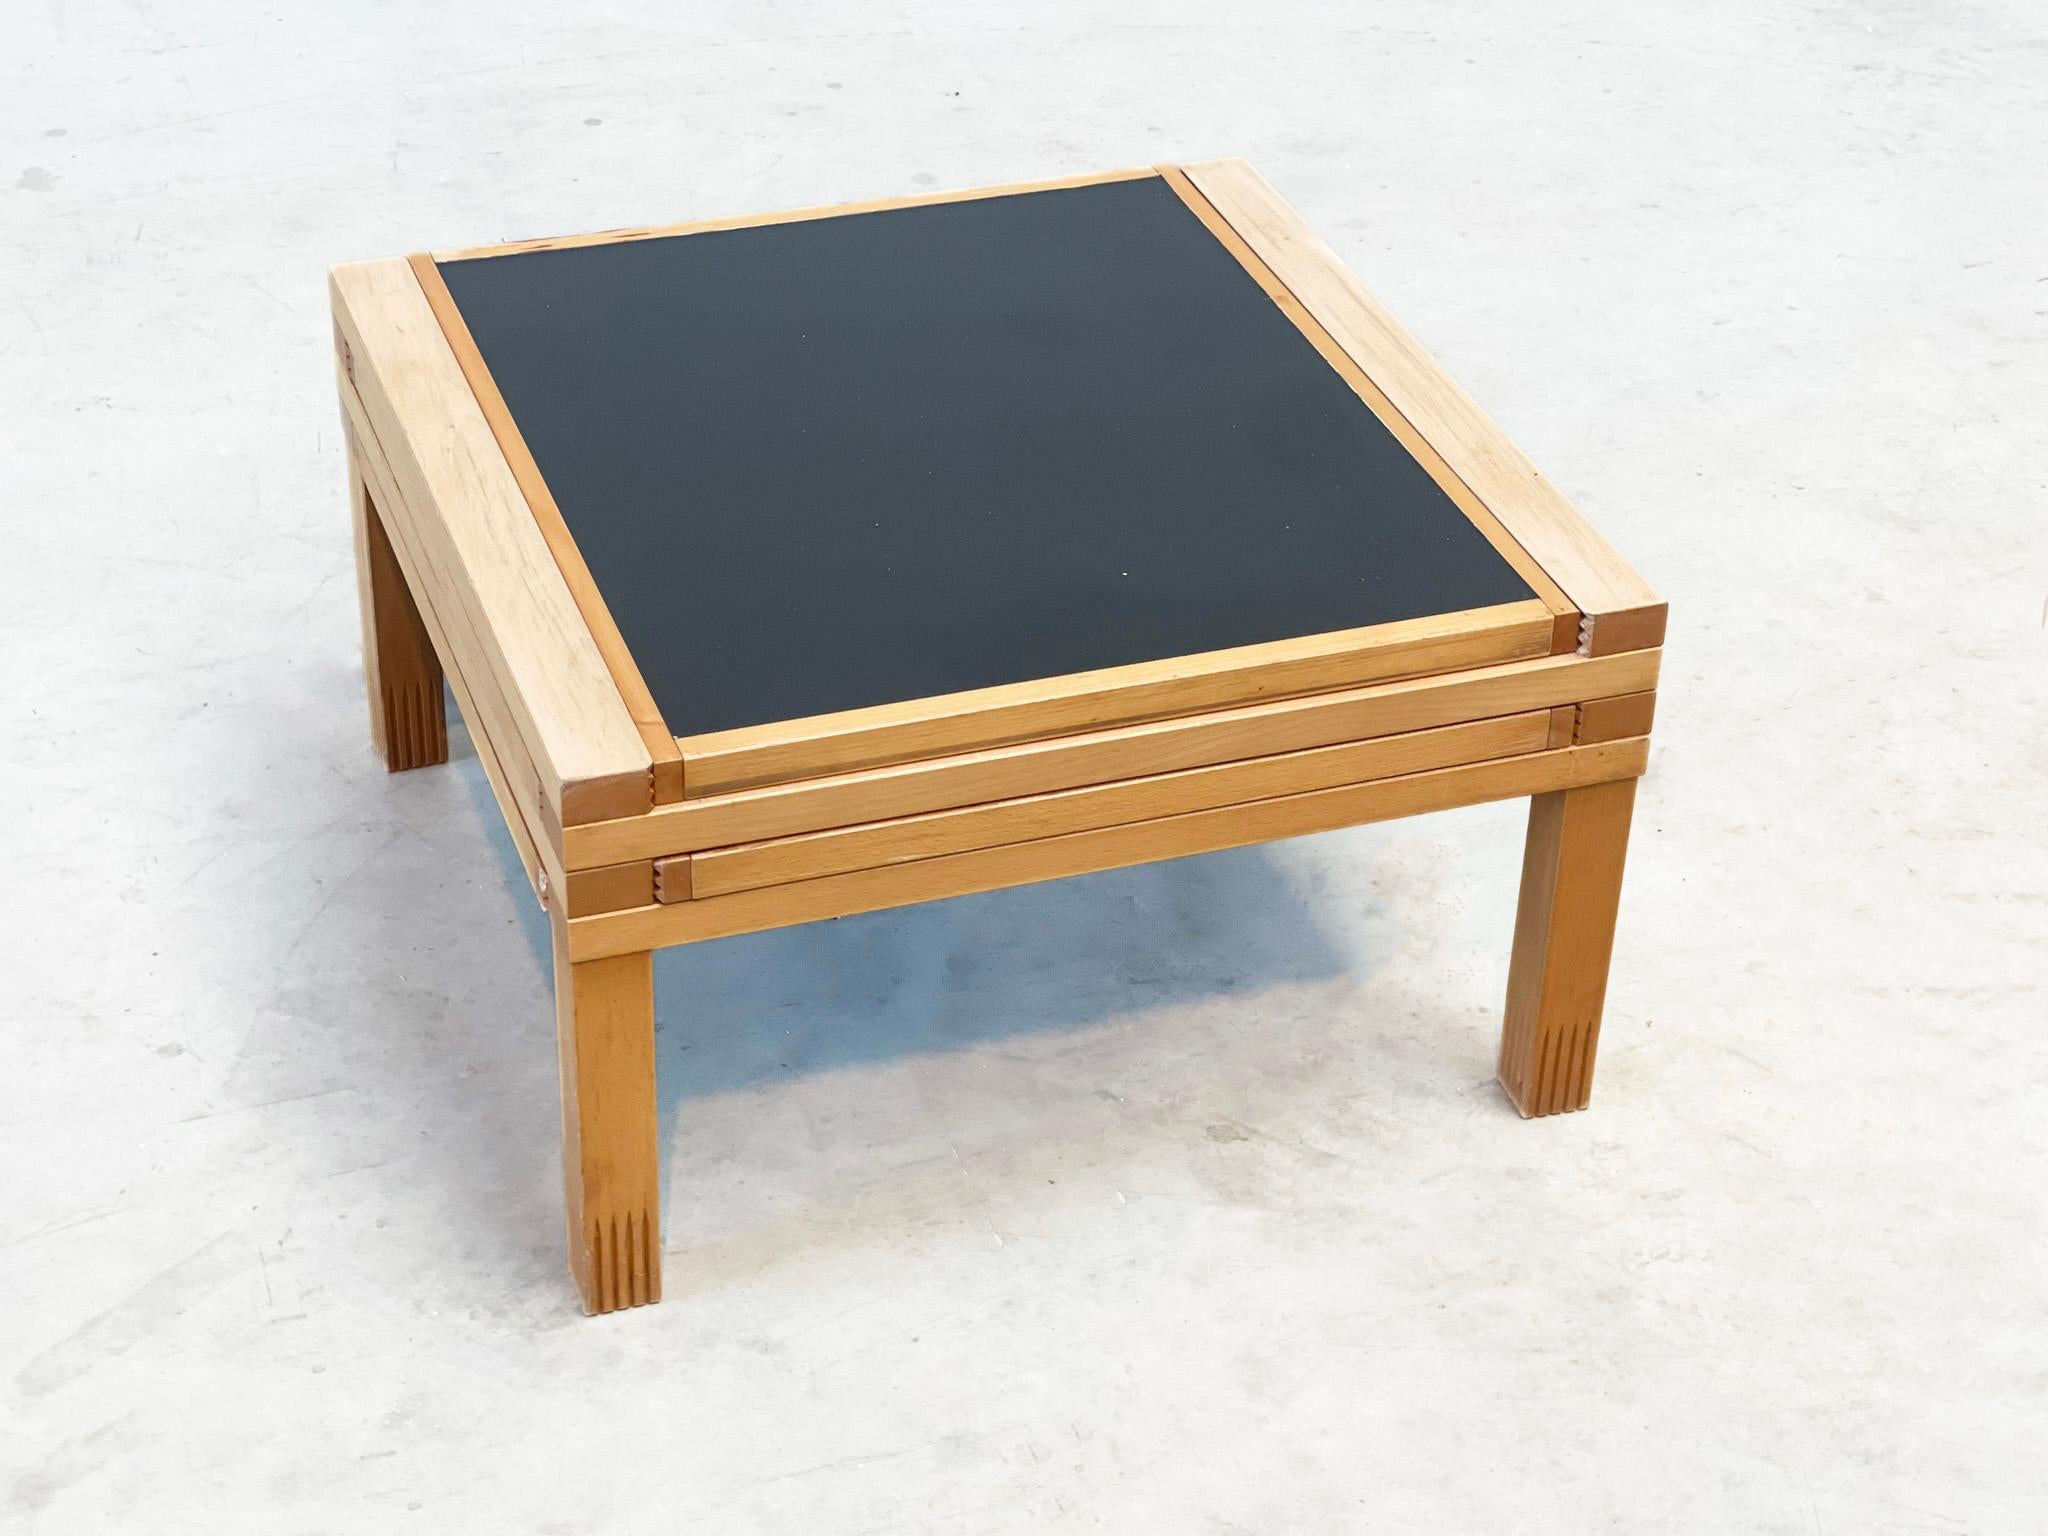 Table basse unique produite par Bellato International srl et conçue par Bernard Vuarnesson dans les années 80. La table est très utile grâce à ses quatre plateaux extensibles en stratifié noir, qui peuvent être placés dans différentes positions. Le